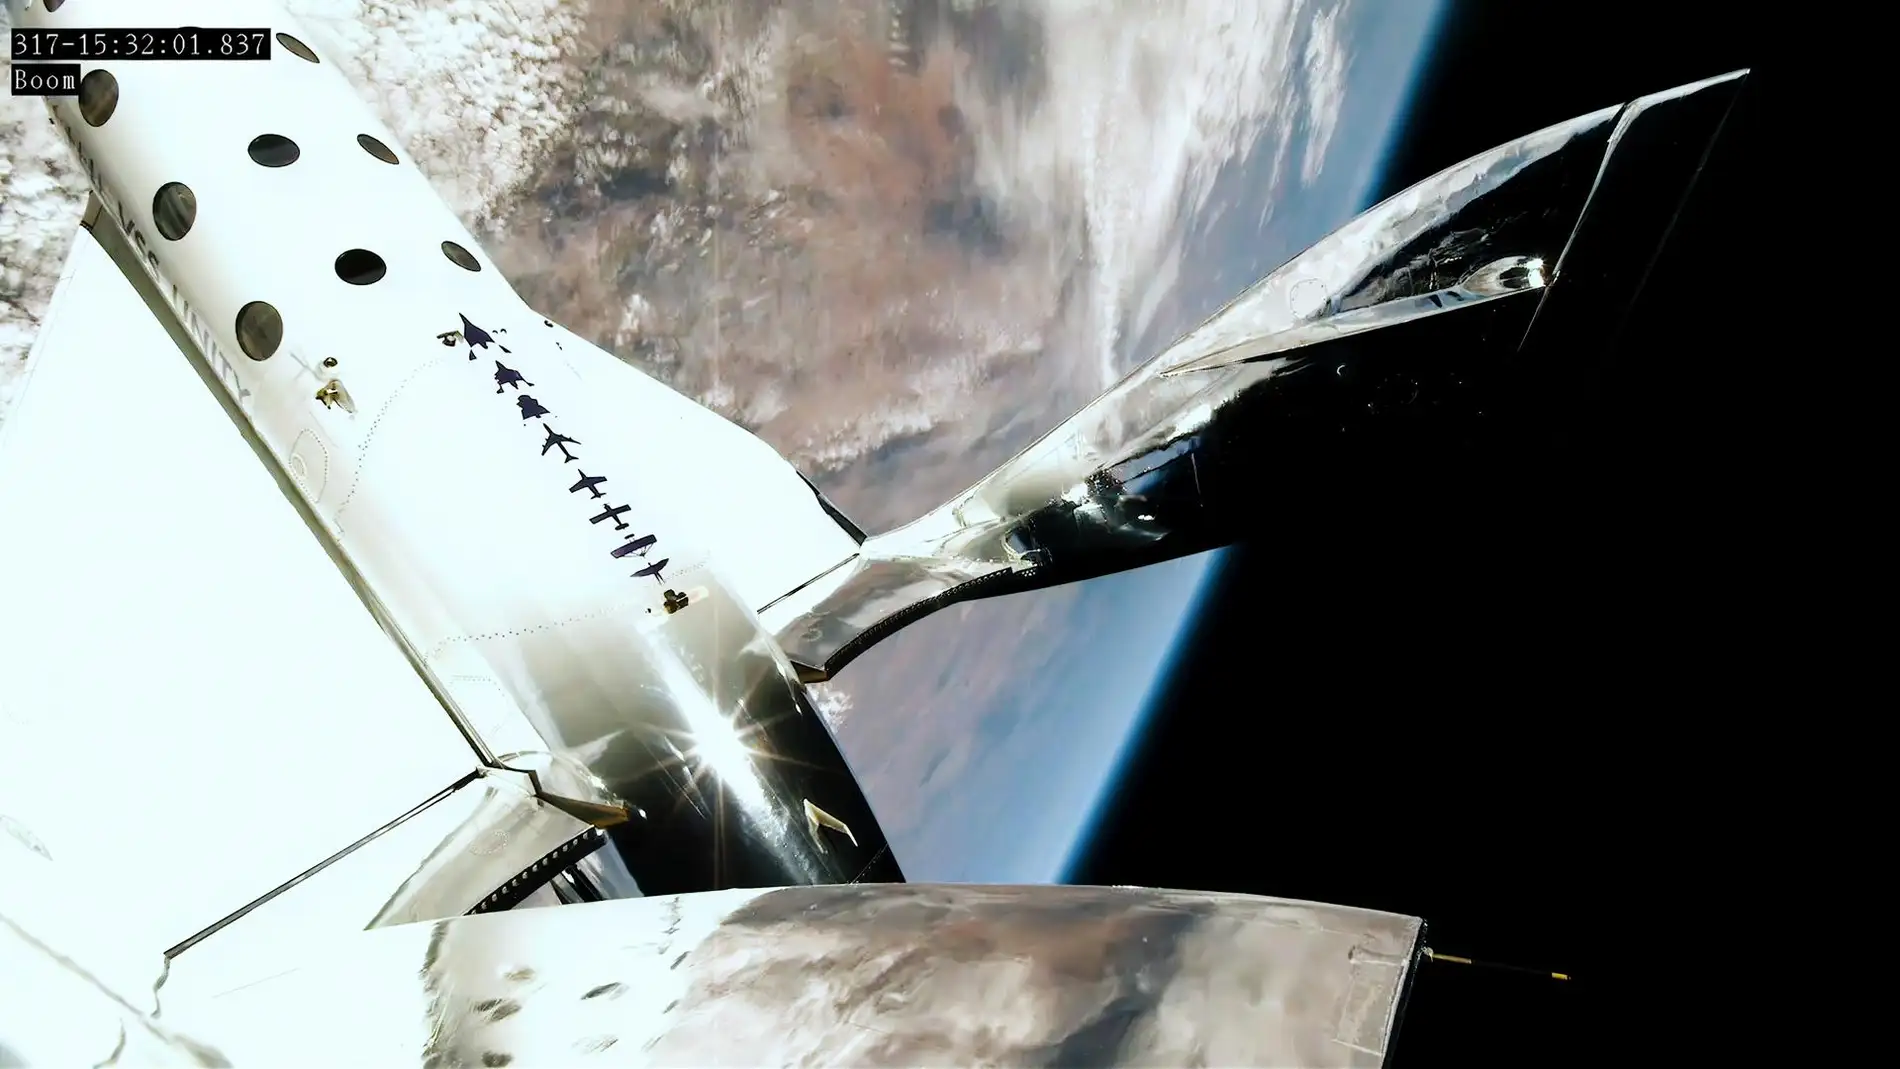 Fotografía cedida por Virgin Galactic que muestra una vista de su vuelo espacial suborbital Unity 25.